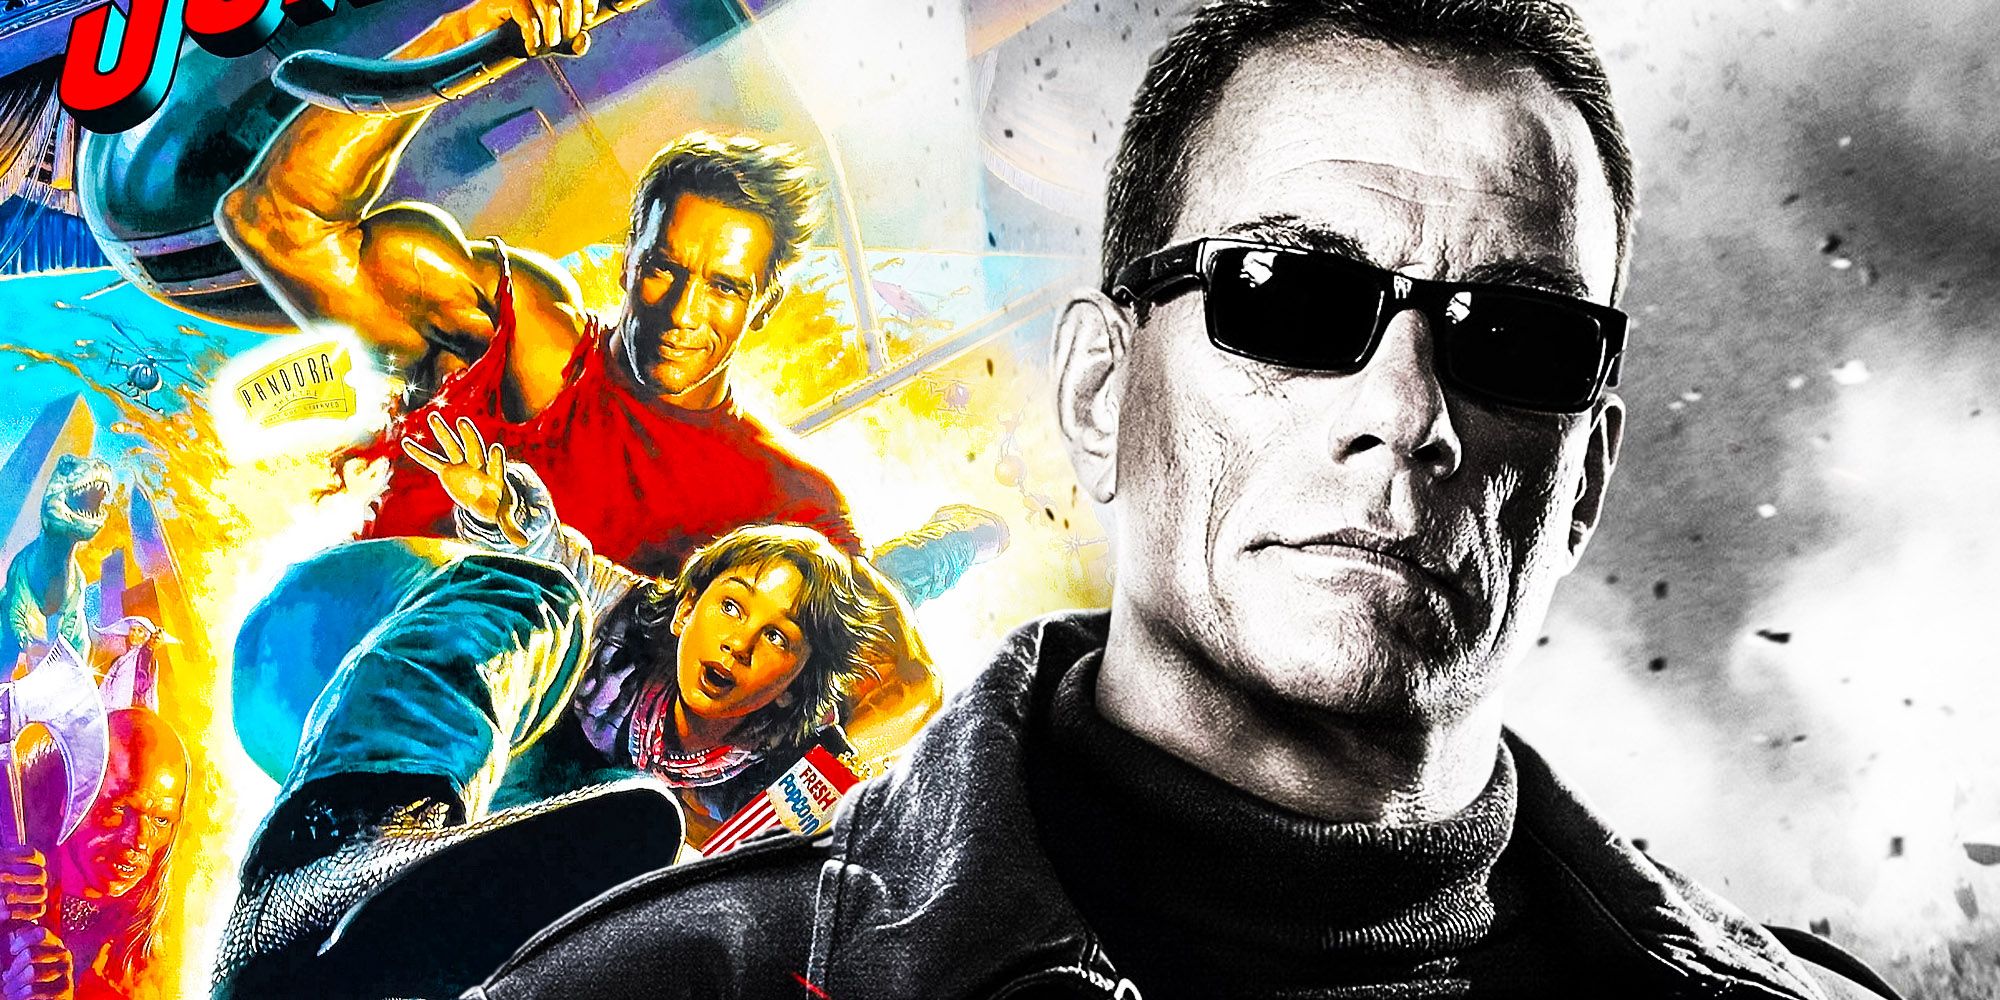 Jean Claude Van Damme Expendables 2 Arnold schwarzenegger last action hero